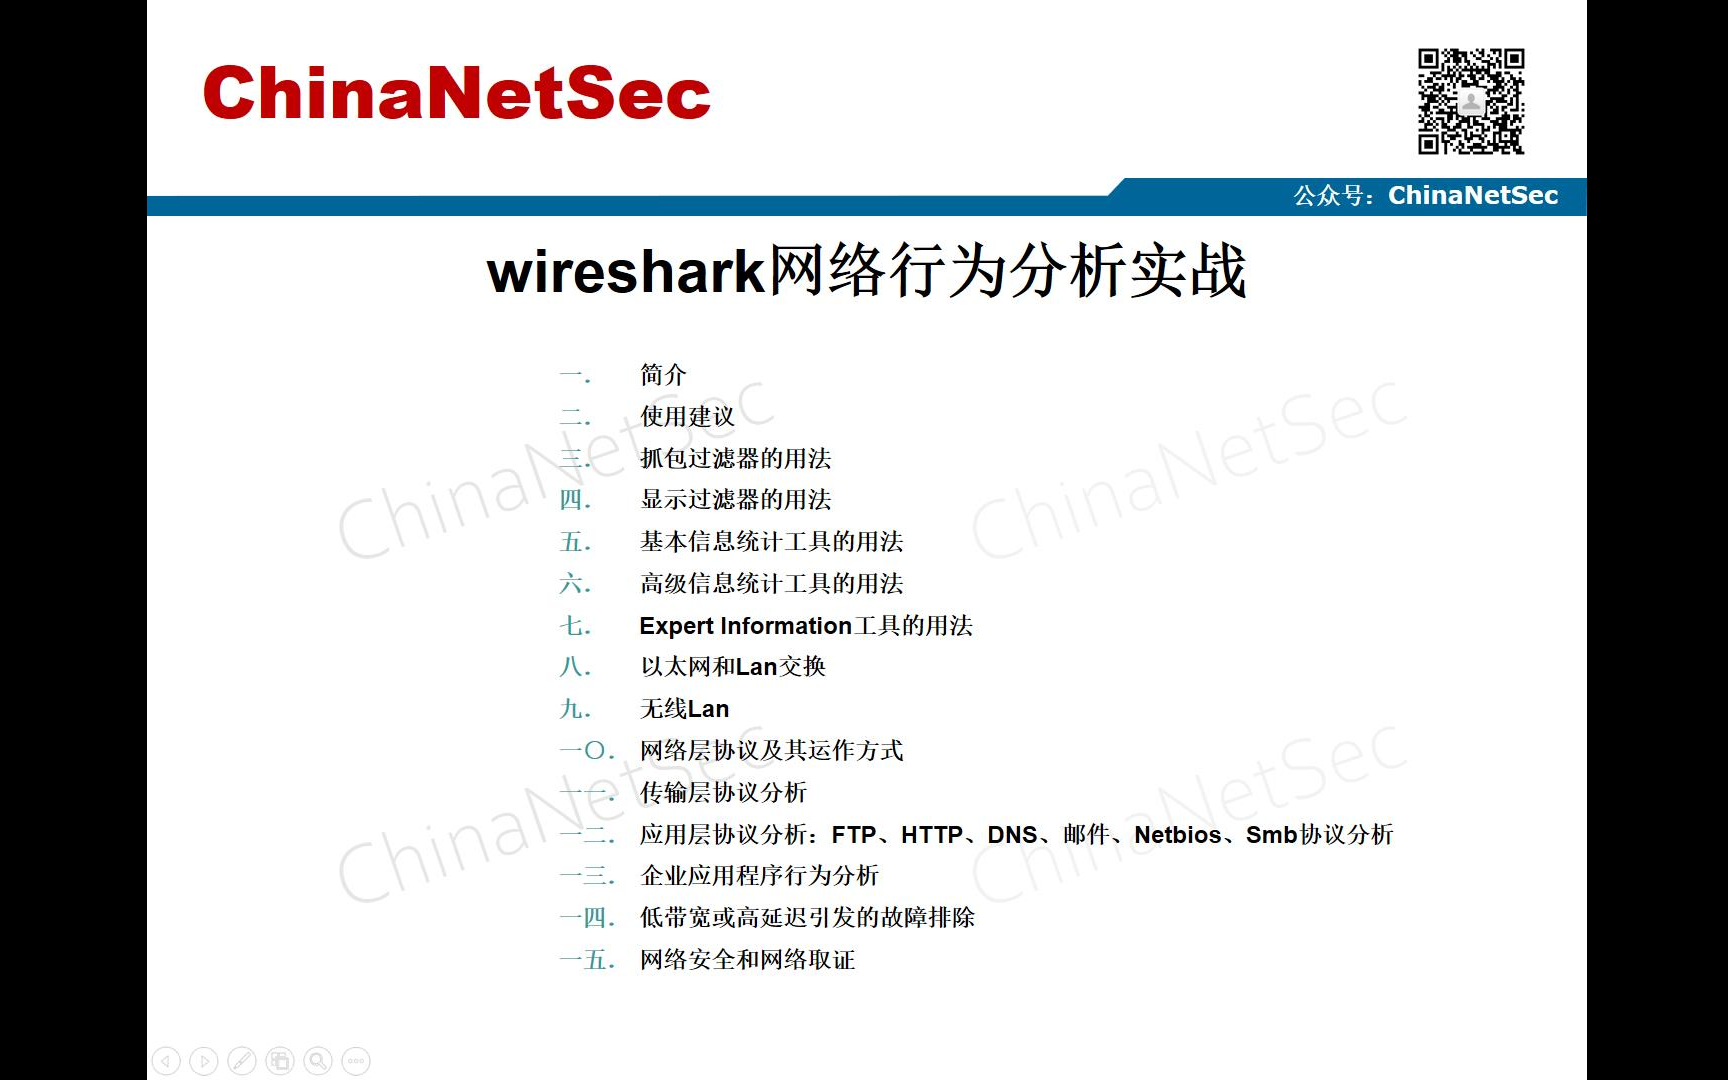 网络攻击行为安全分析实战 之 wireshark网络行为分析实战